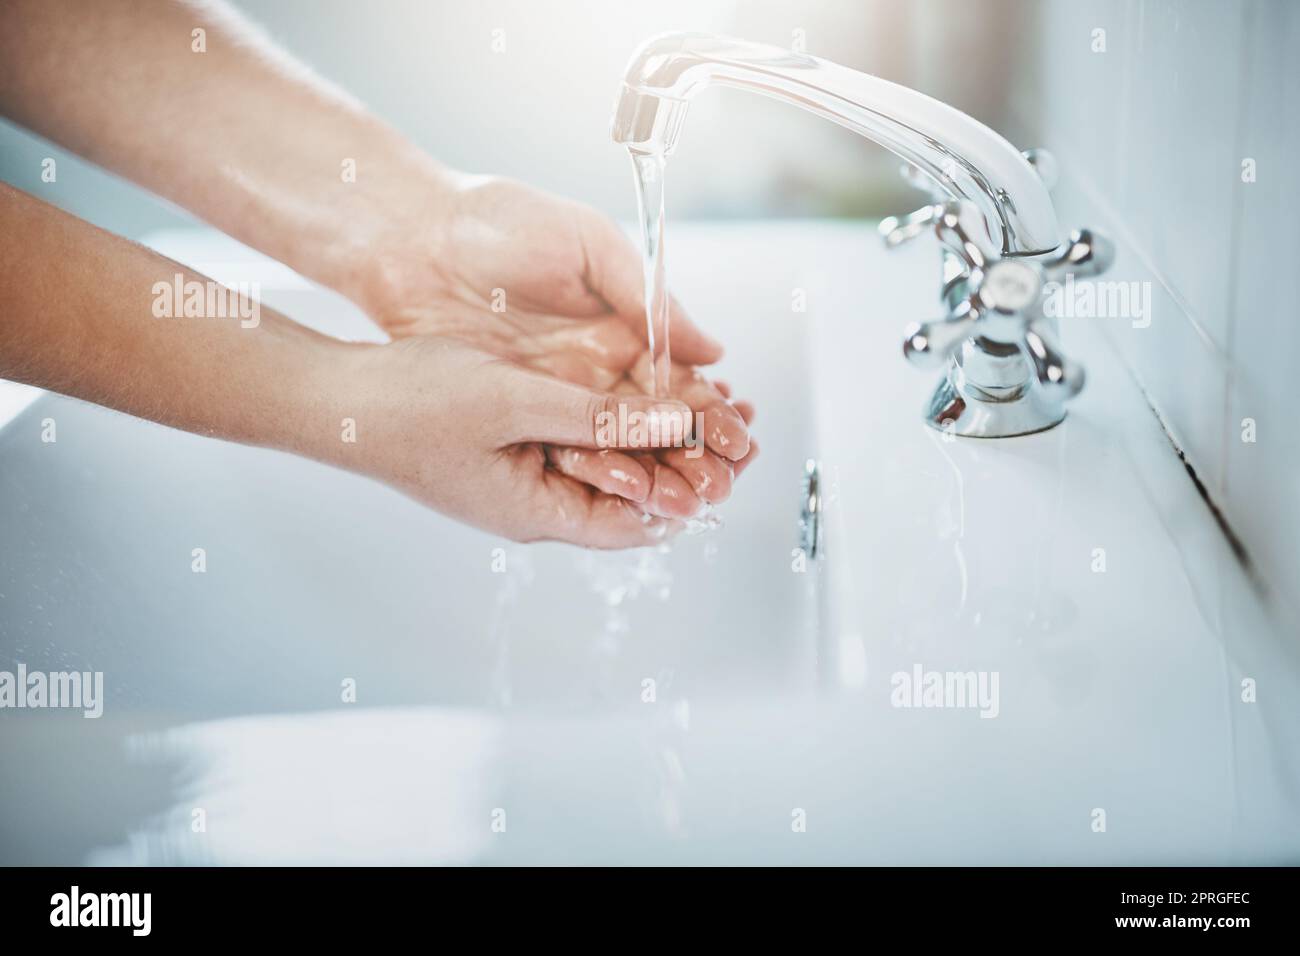 Keime im Abfluss. Hände werden unter fließendem Wasser gewaschen. Stockfoto